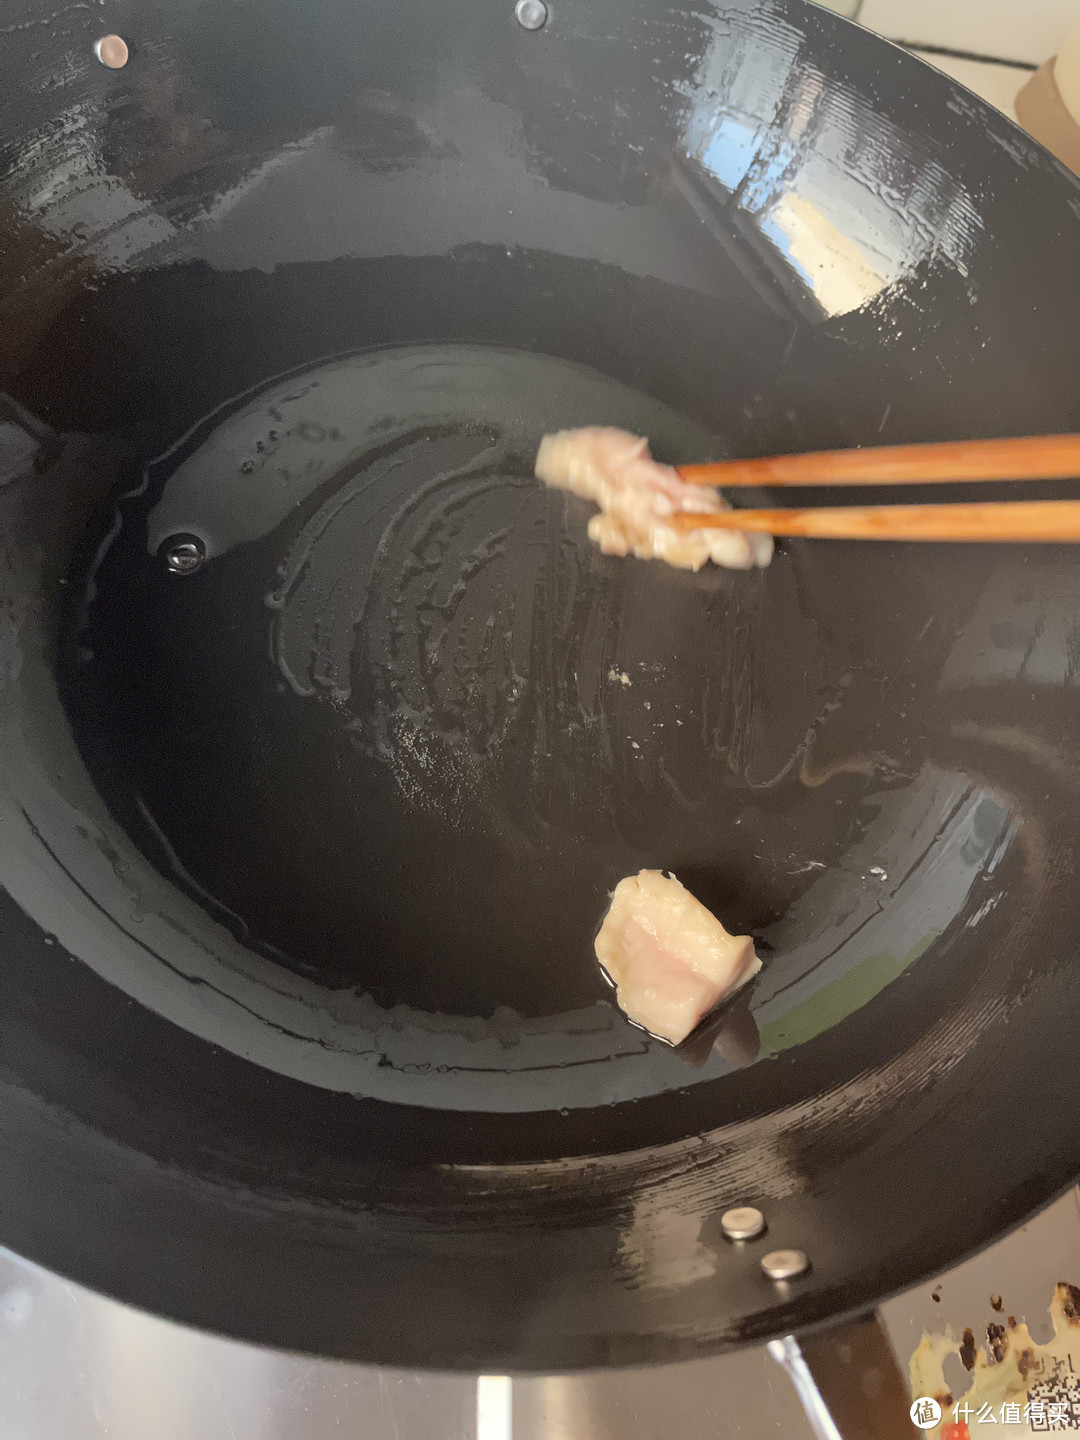 窒化铁锅究竟有什么神奇“魔力”？日本吉奈无涂层铁锅分享，附开锅方法教程，建议收藏！